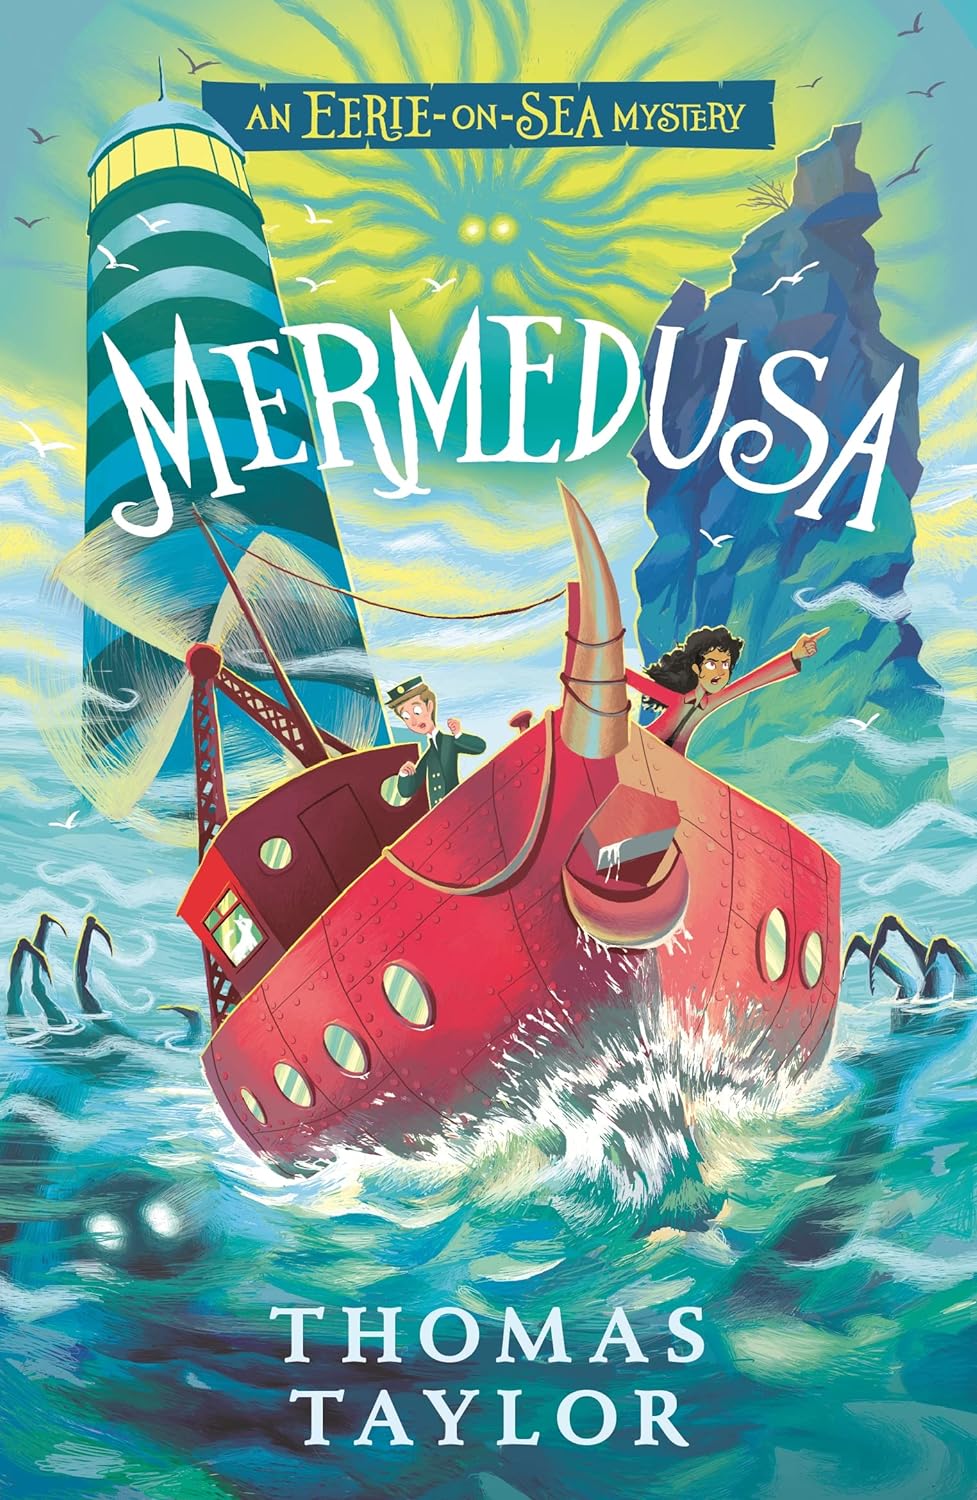 Mermedusa (An Eerie-on-Sea Mystery)